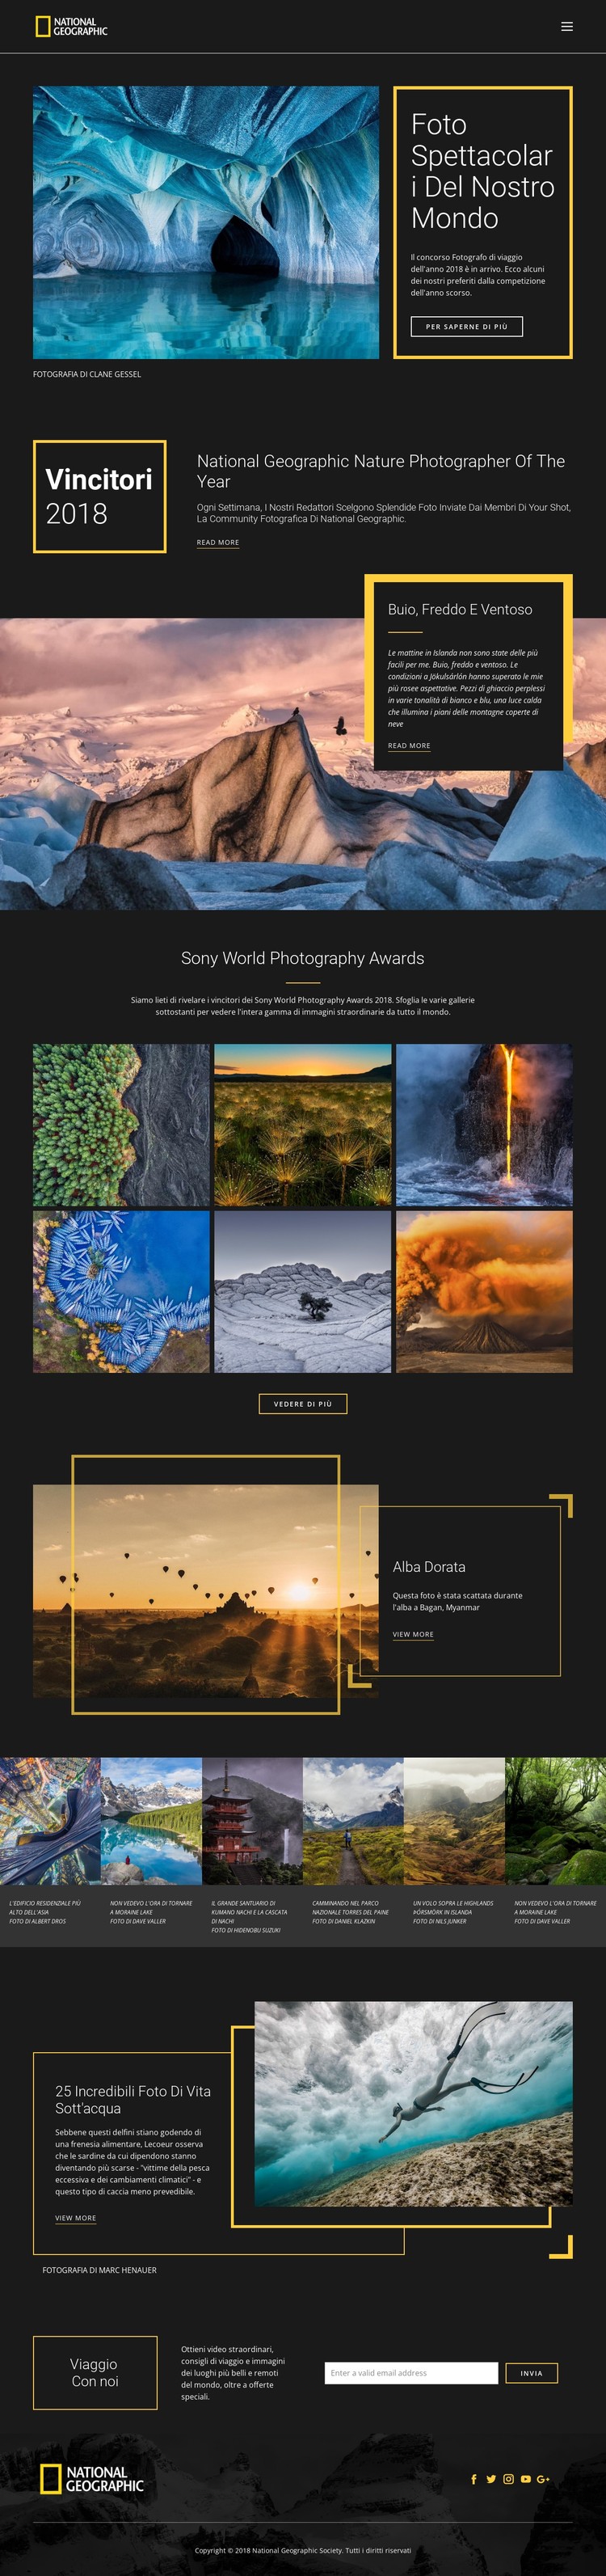 Immagini della natura Modello CSS